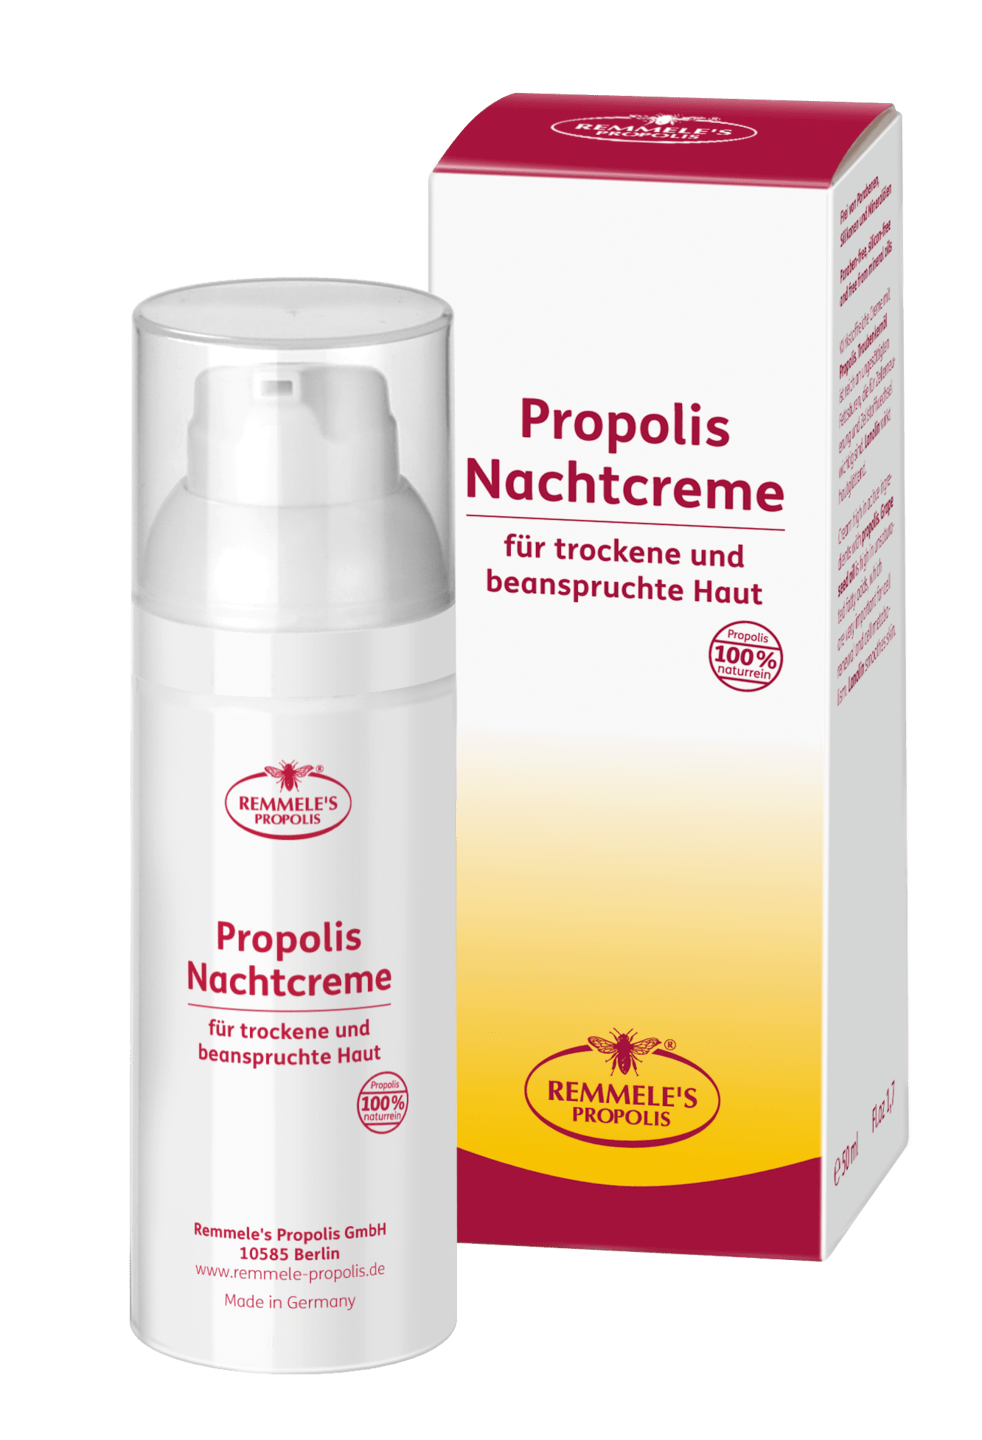 Remmele's Propolis - Propolis Nachtcreme, 50 ml